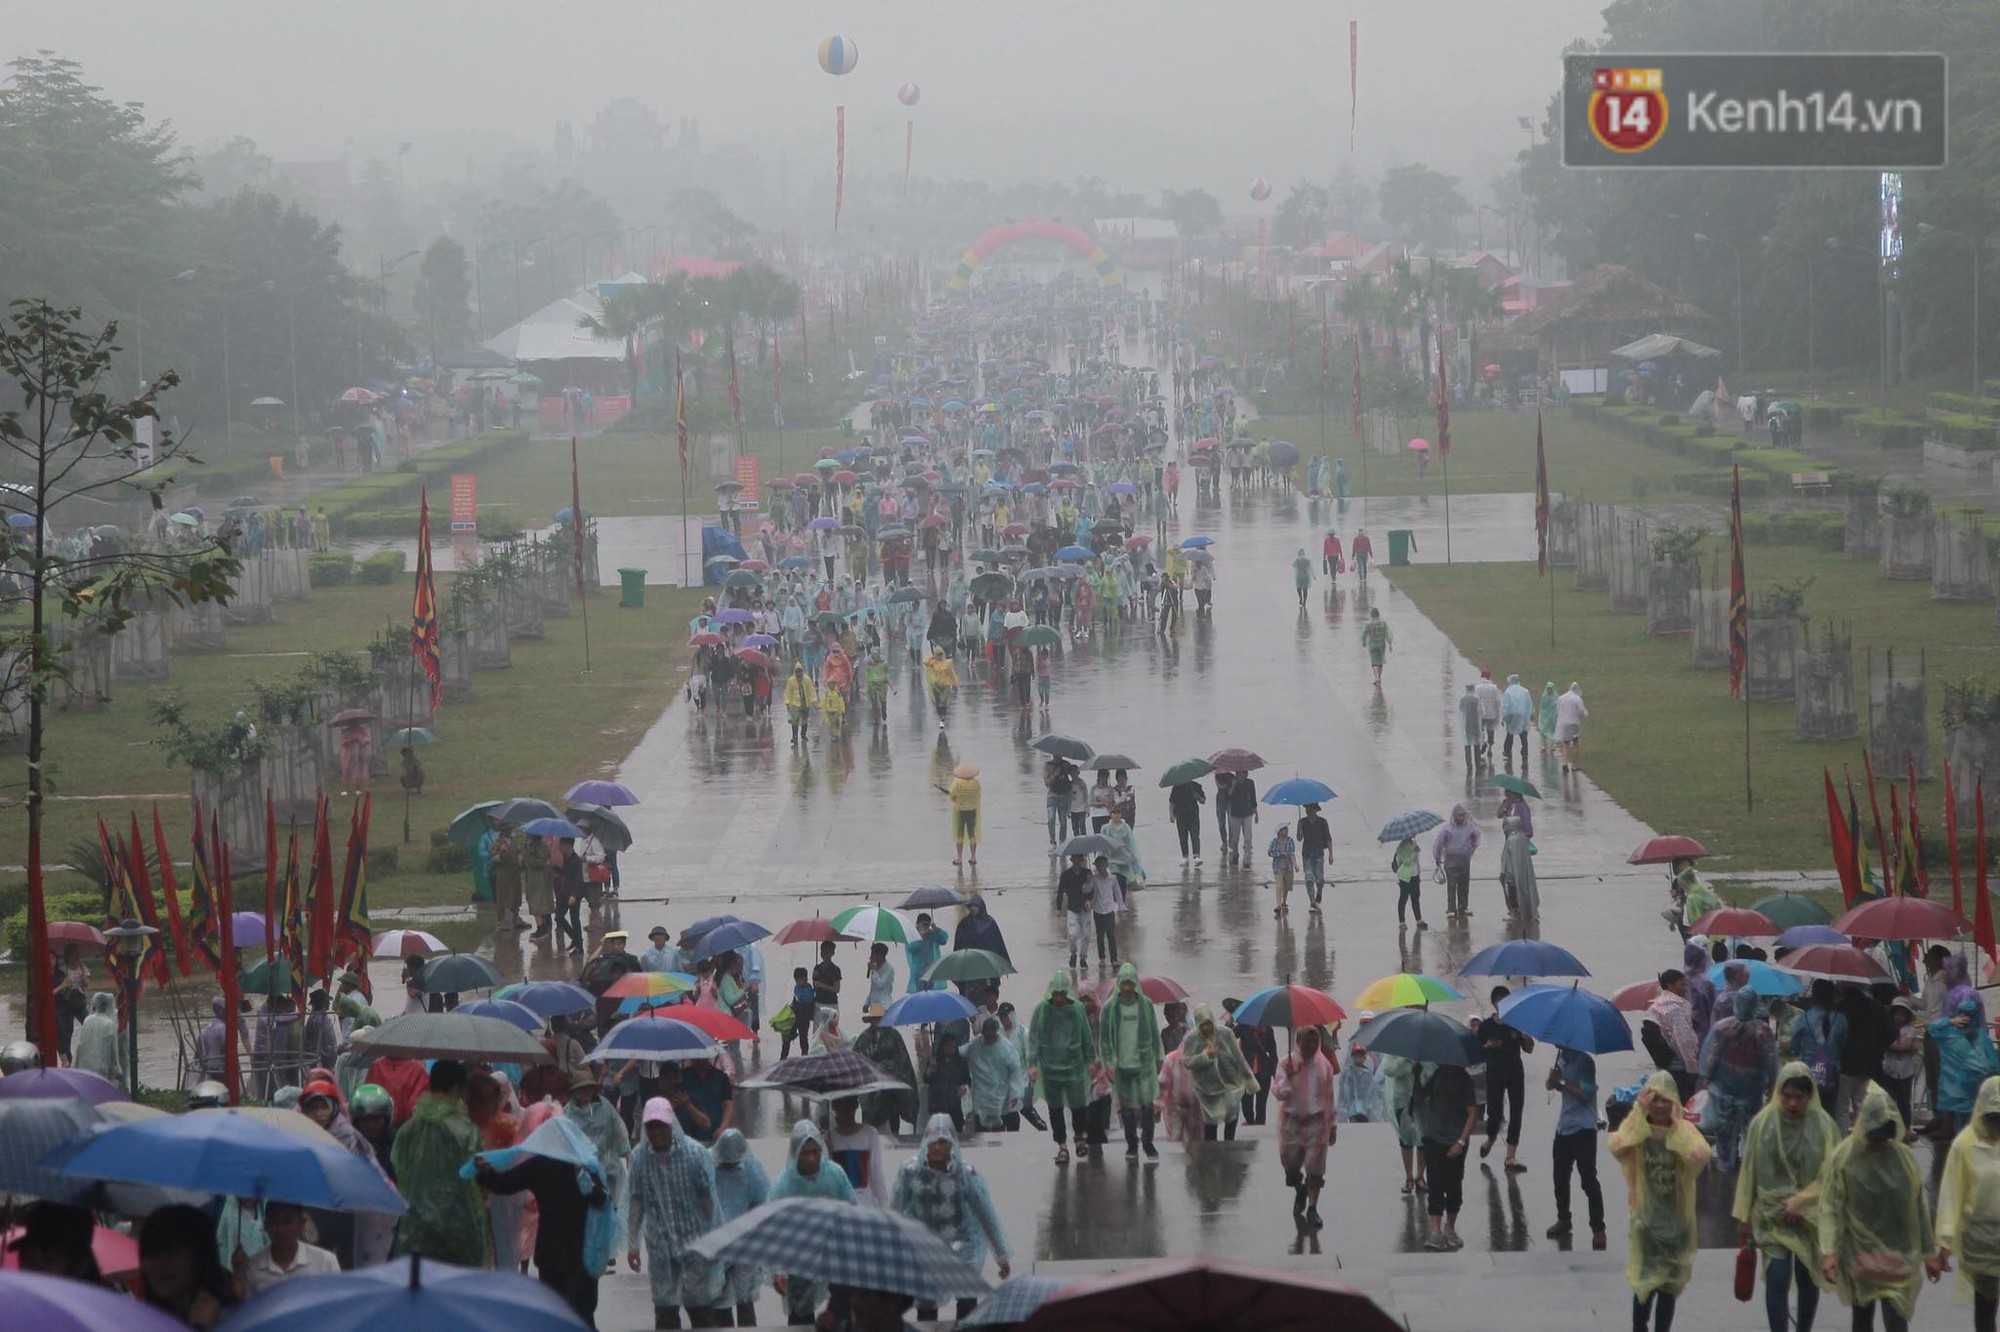 Hàng vạn người dân che ô đi khai hội Đền Hùng, hàng rào sống đứng dưới mưa đảm bảo trật tự cho lễ hội - Ảnh 1.